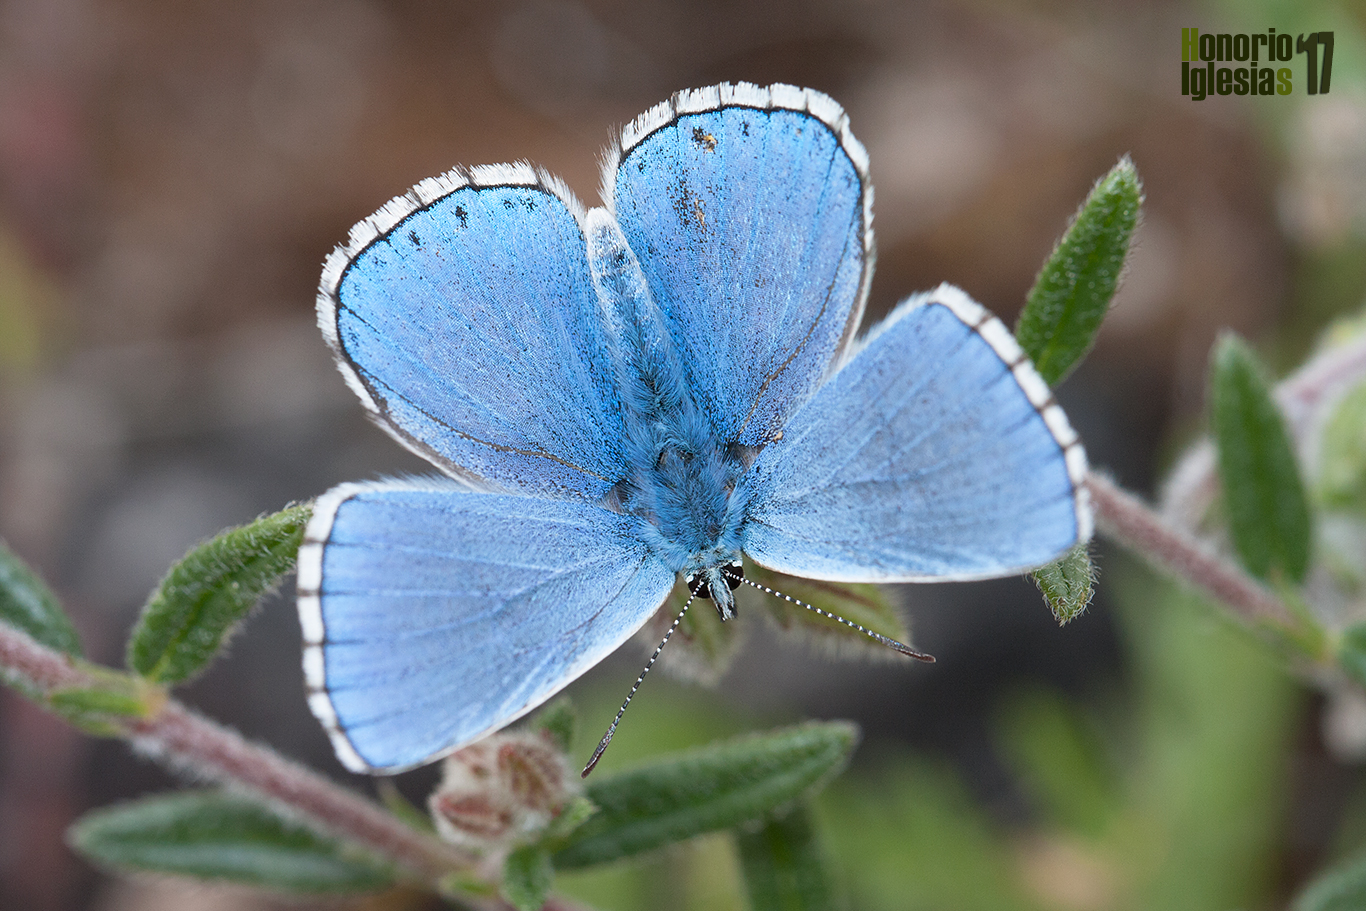 Ejemplar de mariposa niña celeste (Polyommatus (=Lysandra) bellargus) , mostrando uno de los anversos más espectaculares de entre los licénidos azulados.